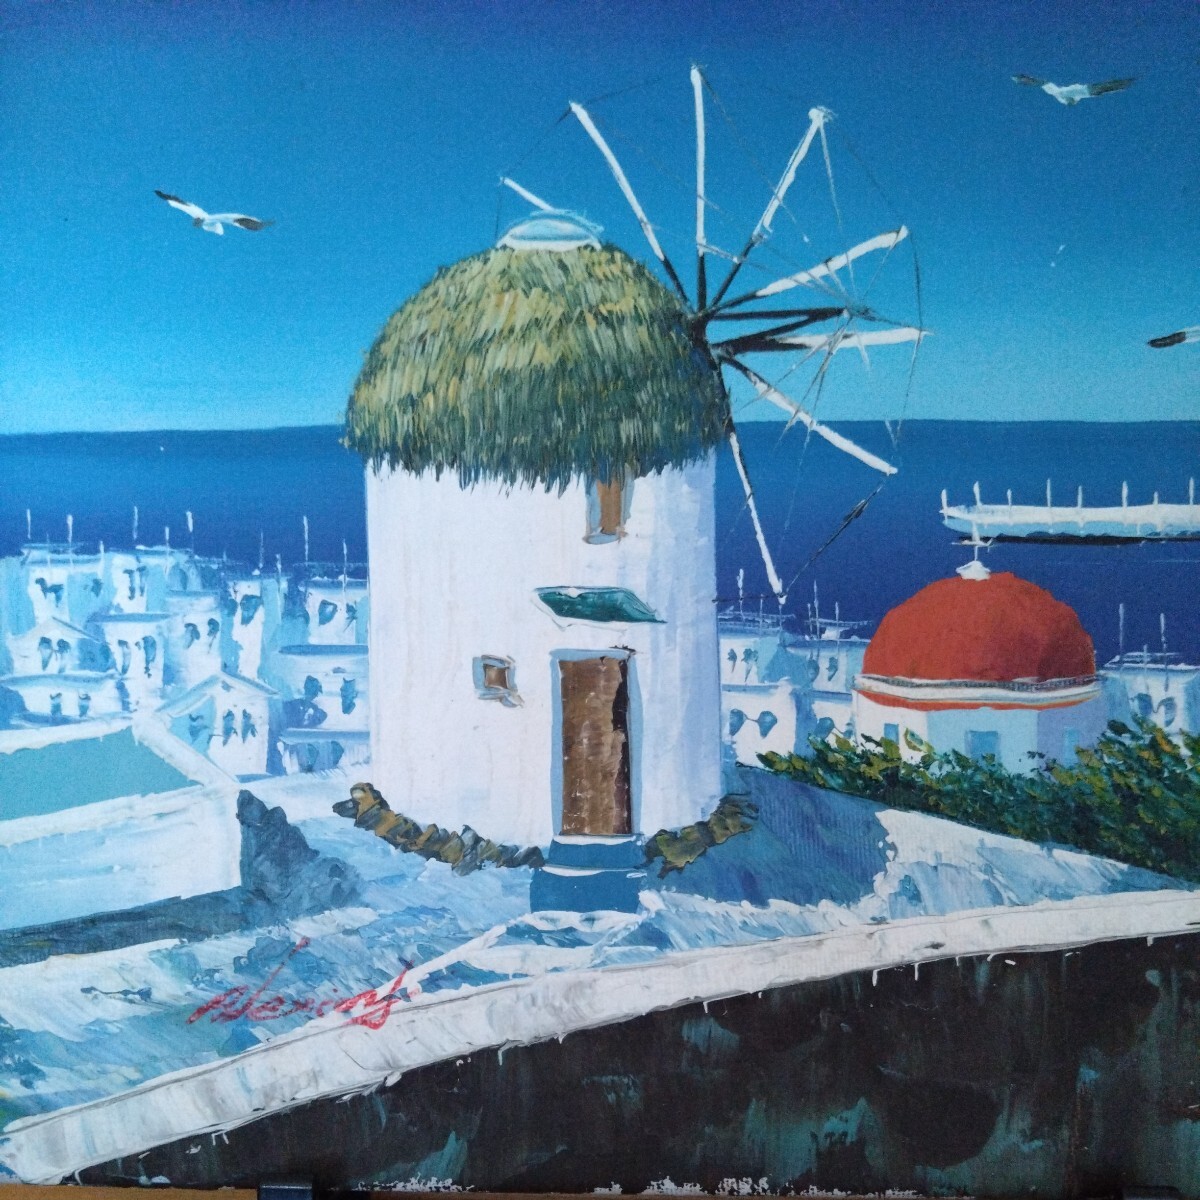 絵画 油絵 白い家 海 地中海 ギリシャ サントリーニ島 美術品 油彩画 風景画 作者/詳細不明 サインあり サイズ:21×26㎝位 インテリア _画像3